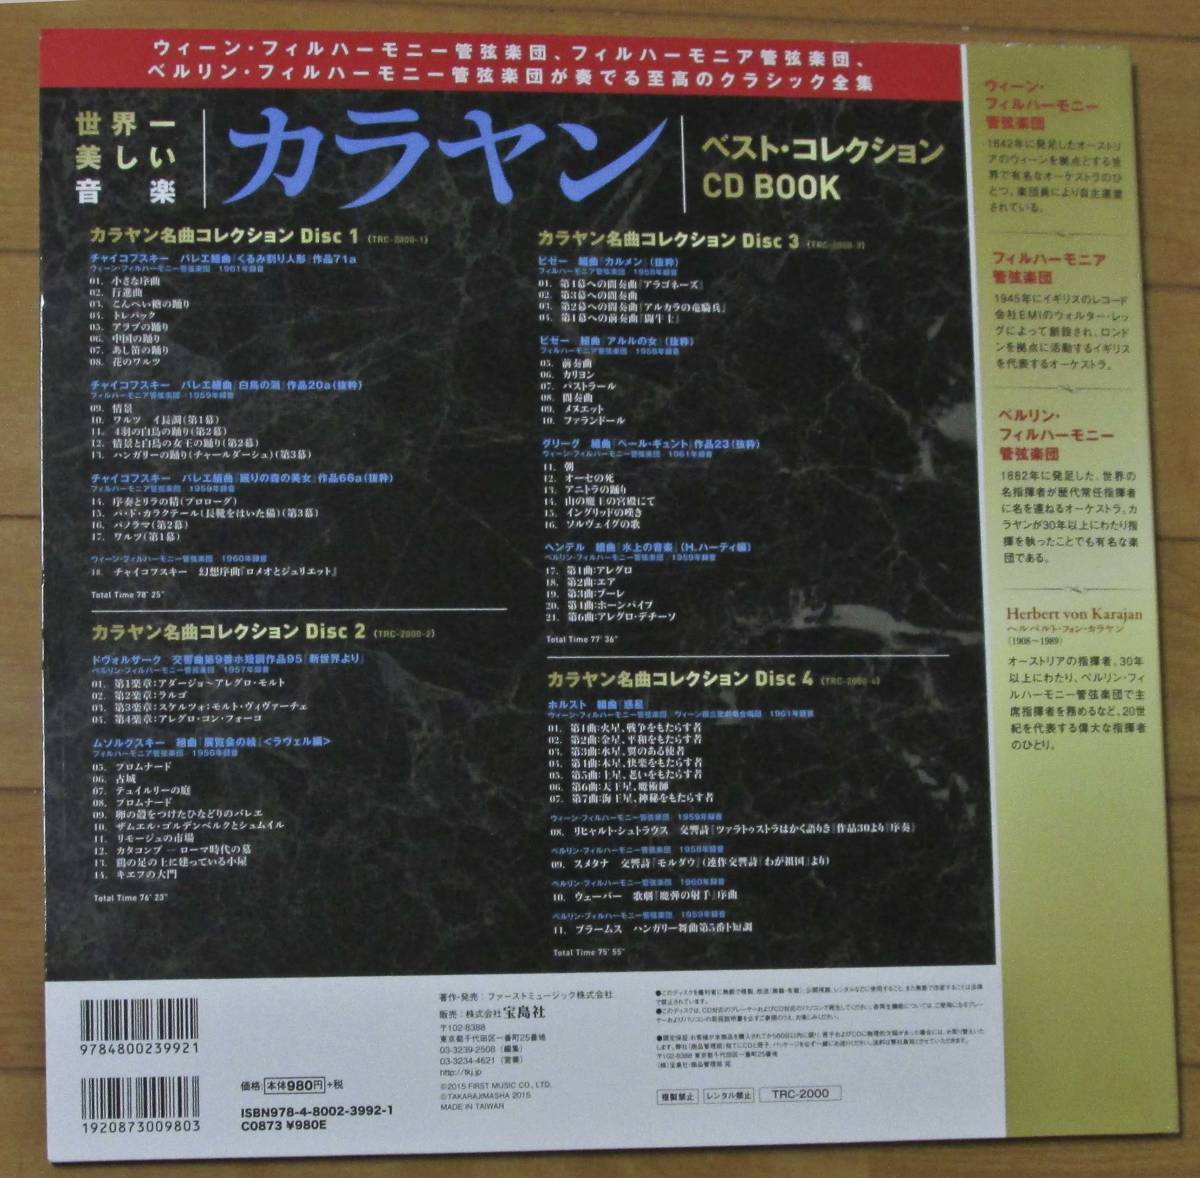 (4CD) 世界一美しい音楽 カラヤン ベスト・コレクション CD BOOK _画像2